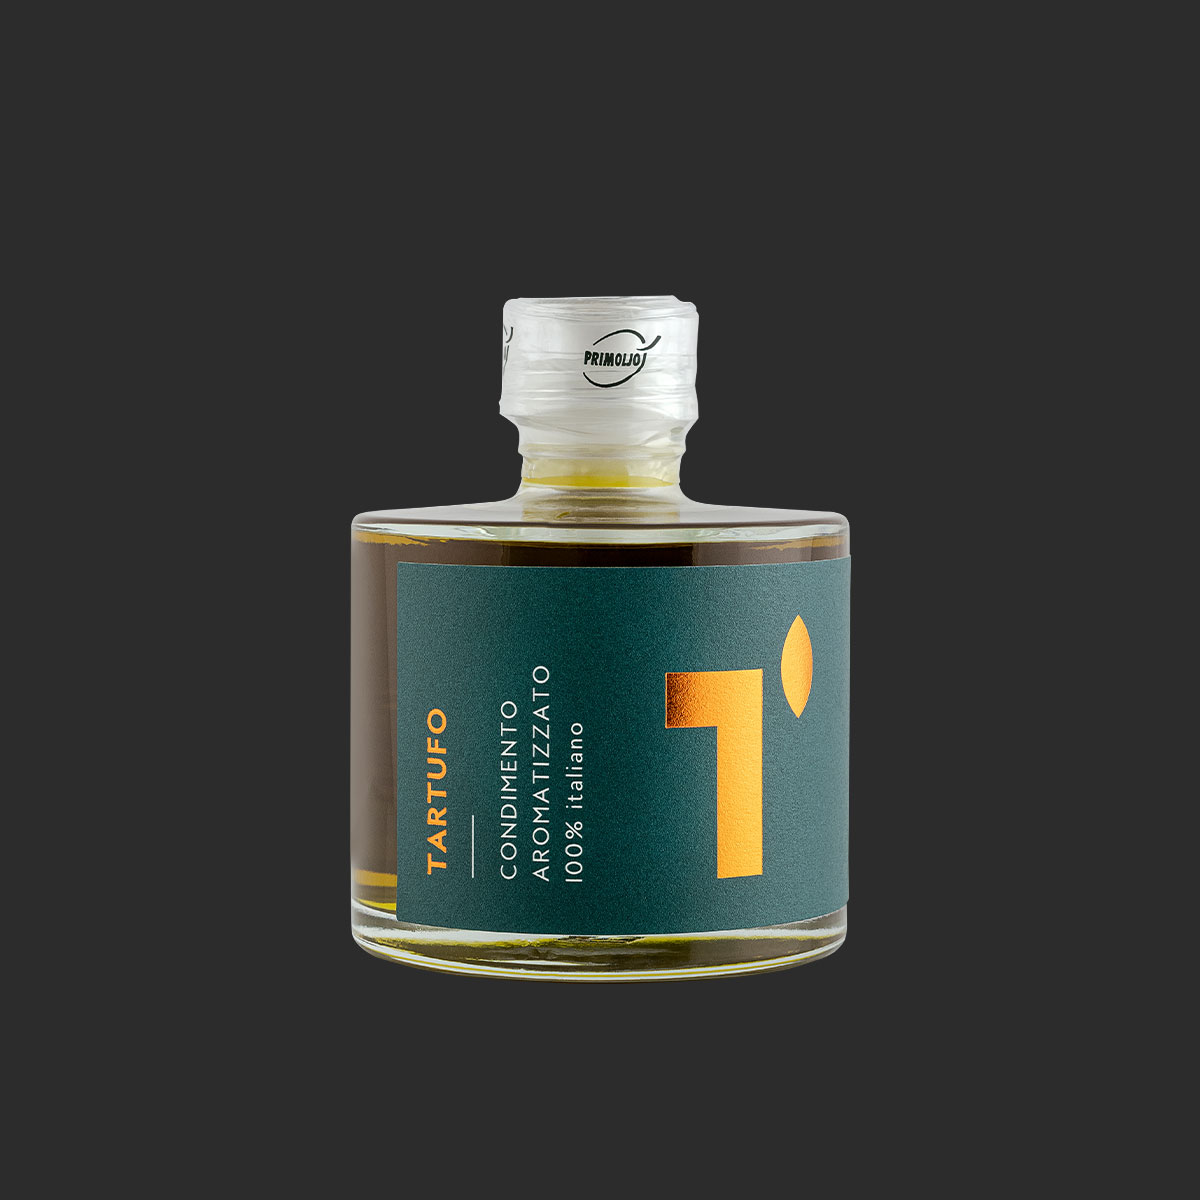 Primoljo condimento a base di olio di oliva aromatizzato al tartufo